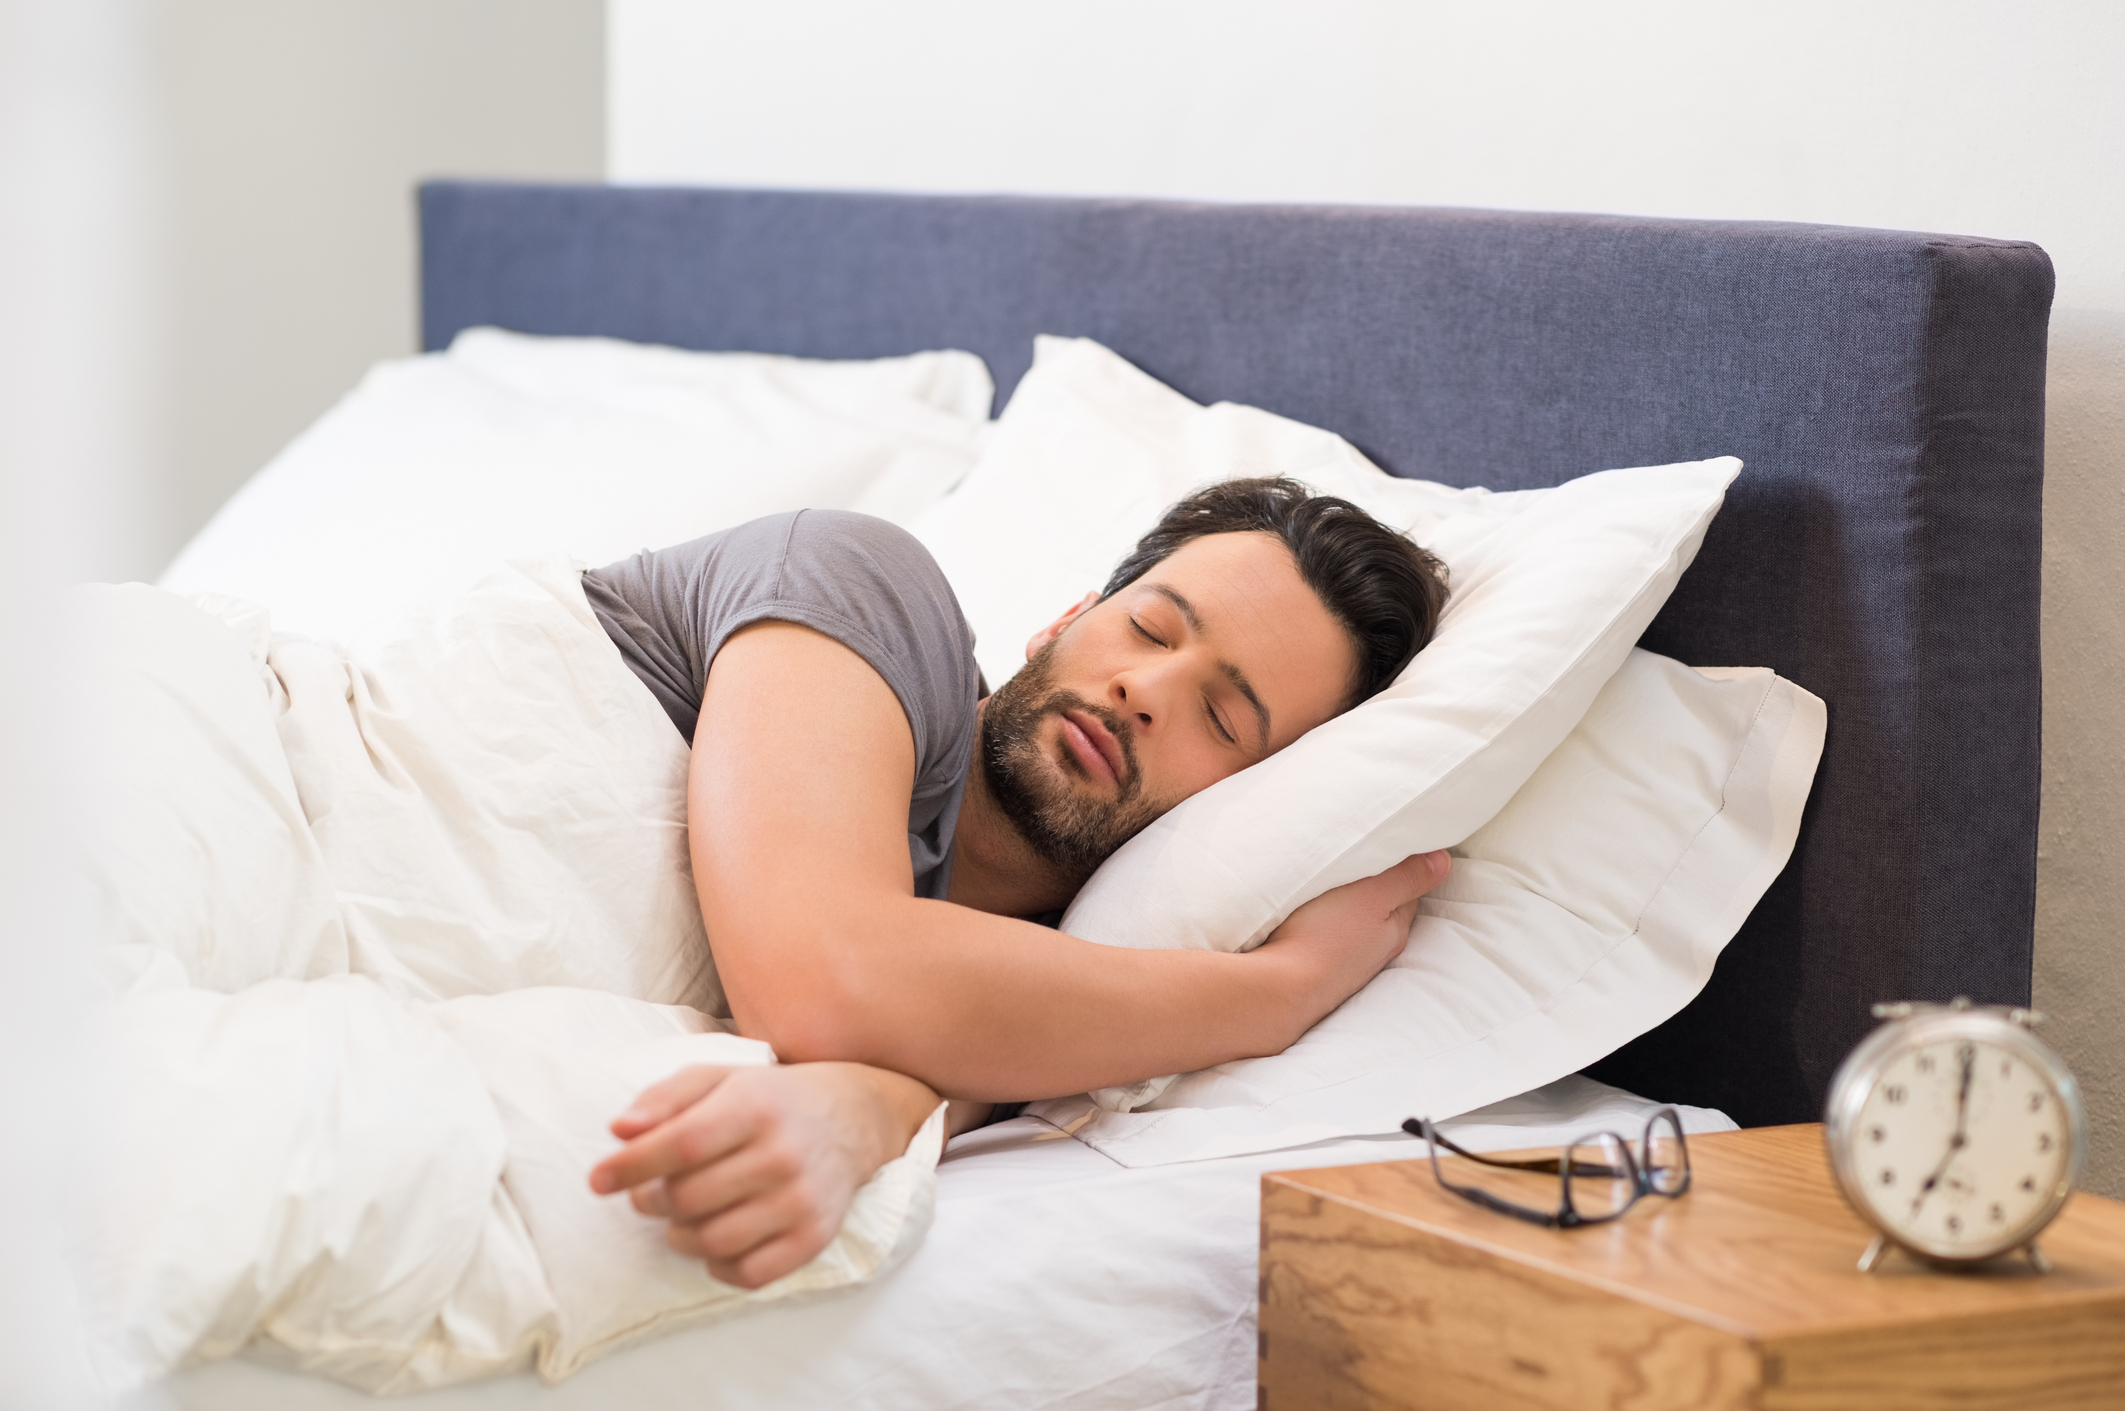 Прекалено краткият или прекалено дълъг сън може да повлияе върху мъжката плодовитост, сочат резултатите от изследване, цитирани от ЮПИ. "Препоръчителната продължителност на нощния сън е 7-8 часа - заяви ръководителката на изследването Лорън Уайз от Института по обществено здравеопазване към Бостънския университет.